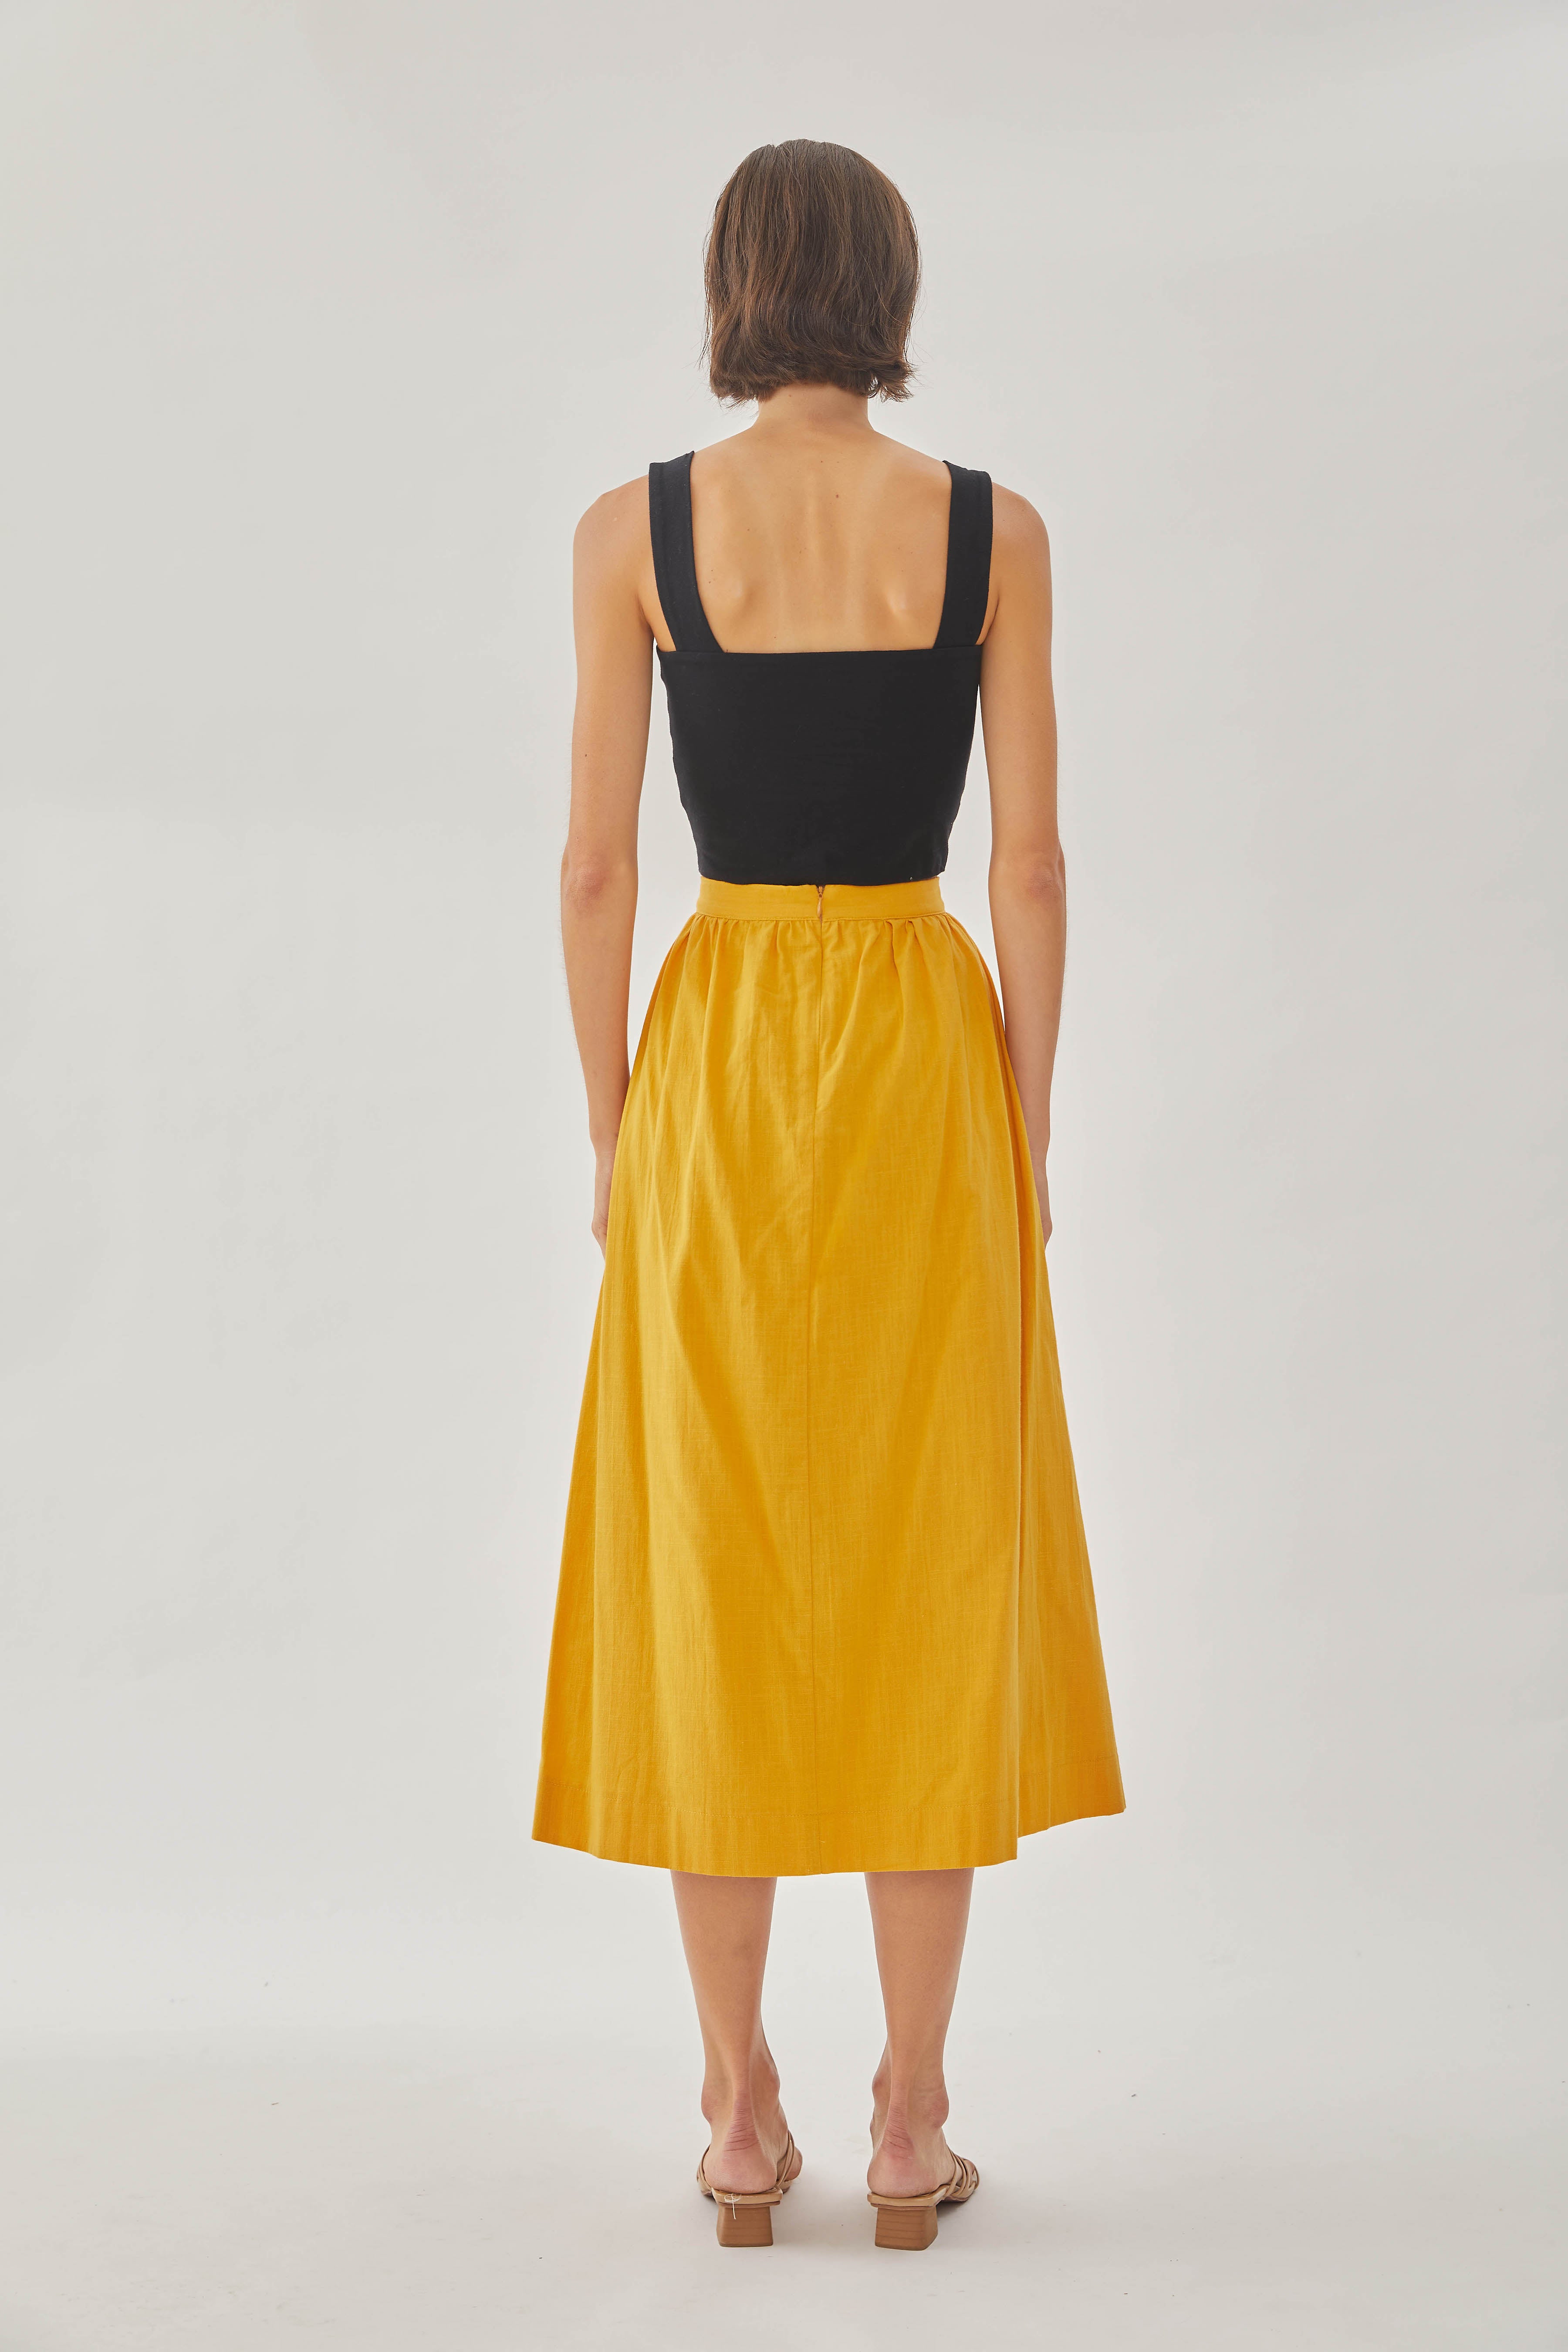 Cotton Midi Skirt in Sunburst